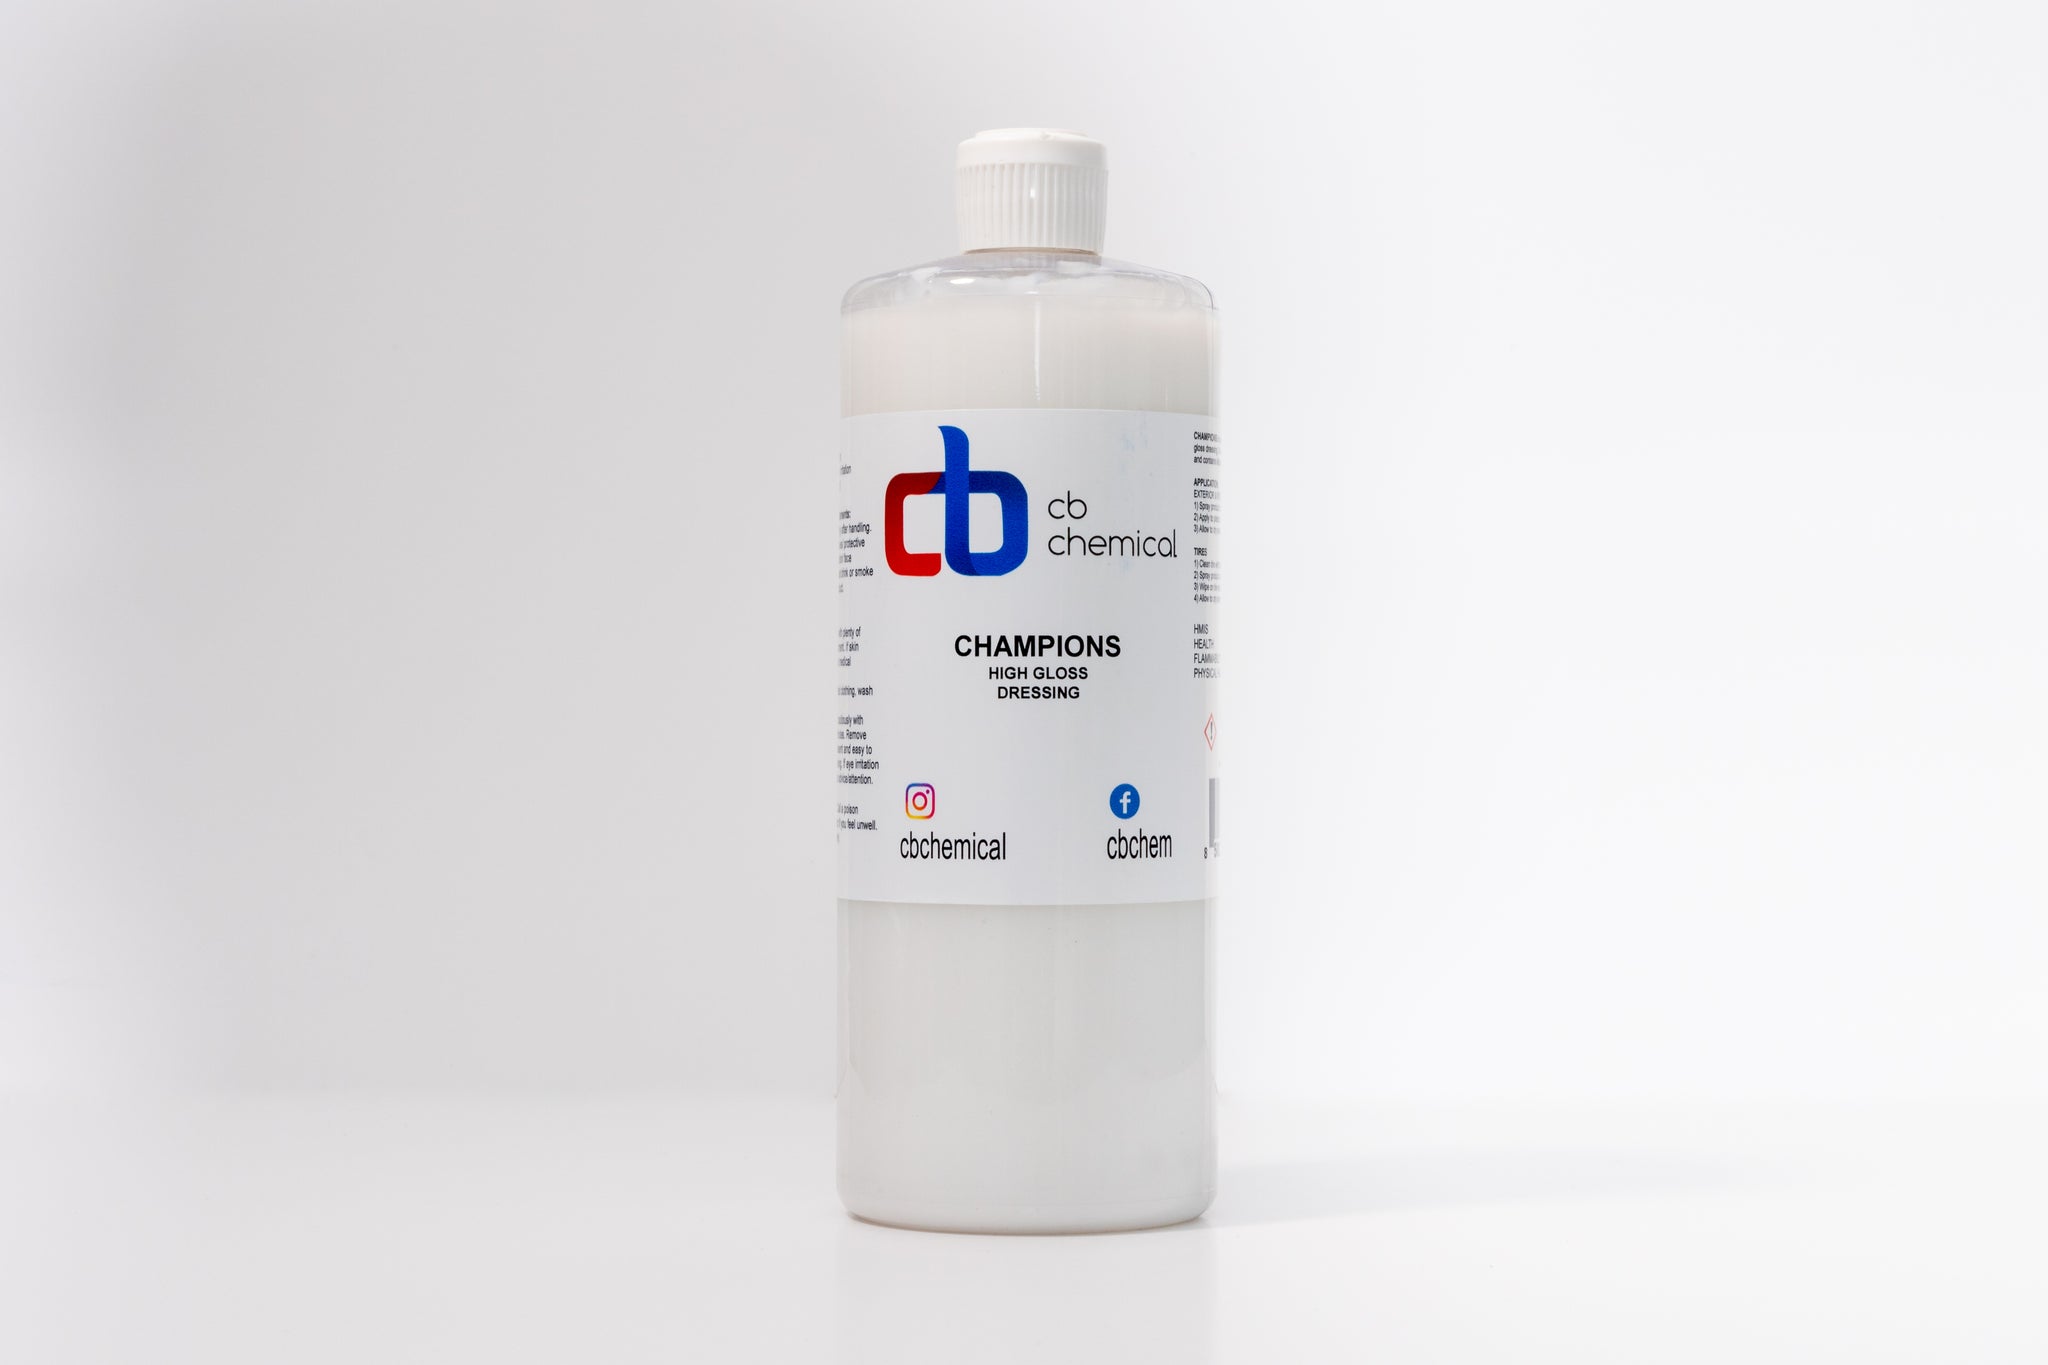 Champions - C & B Chemical, Inc